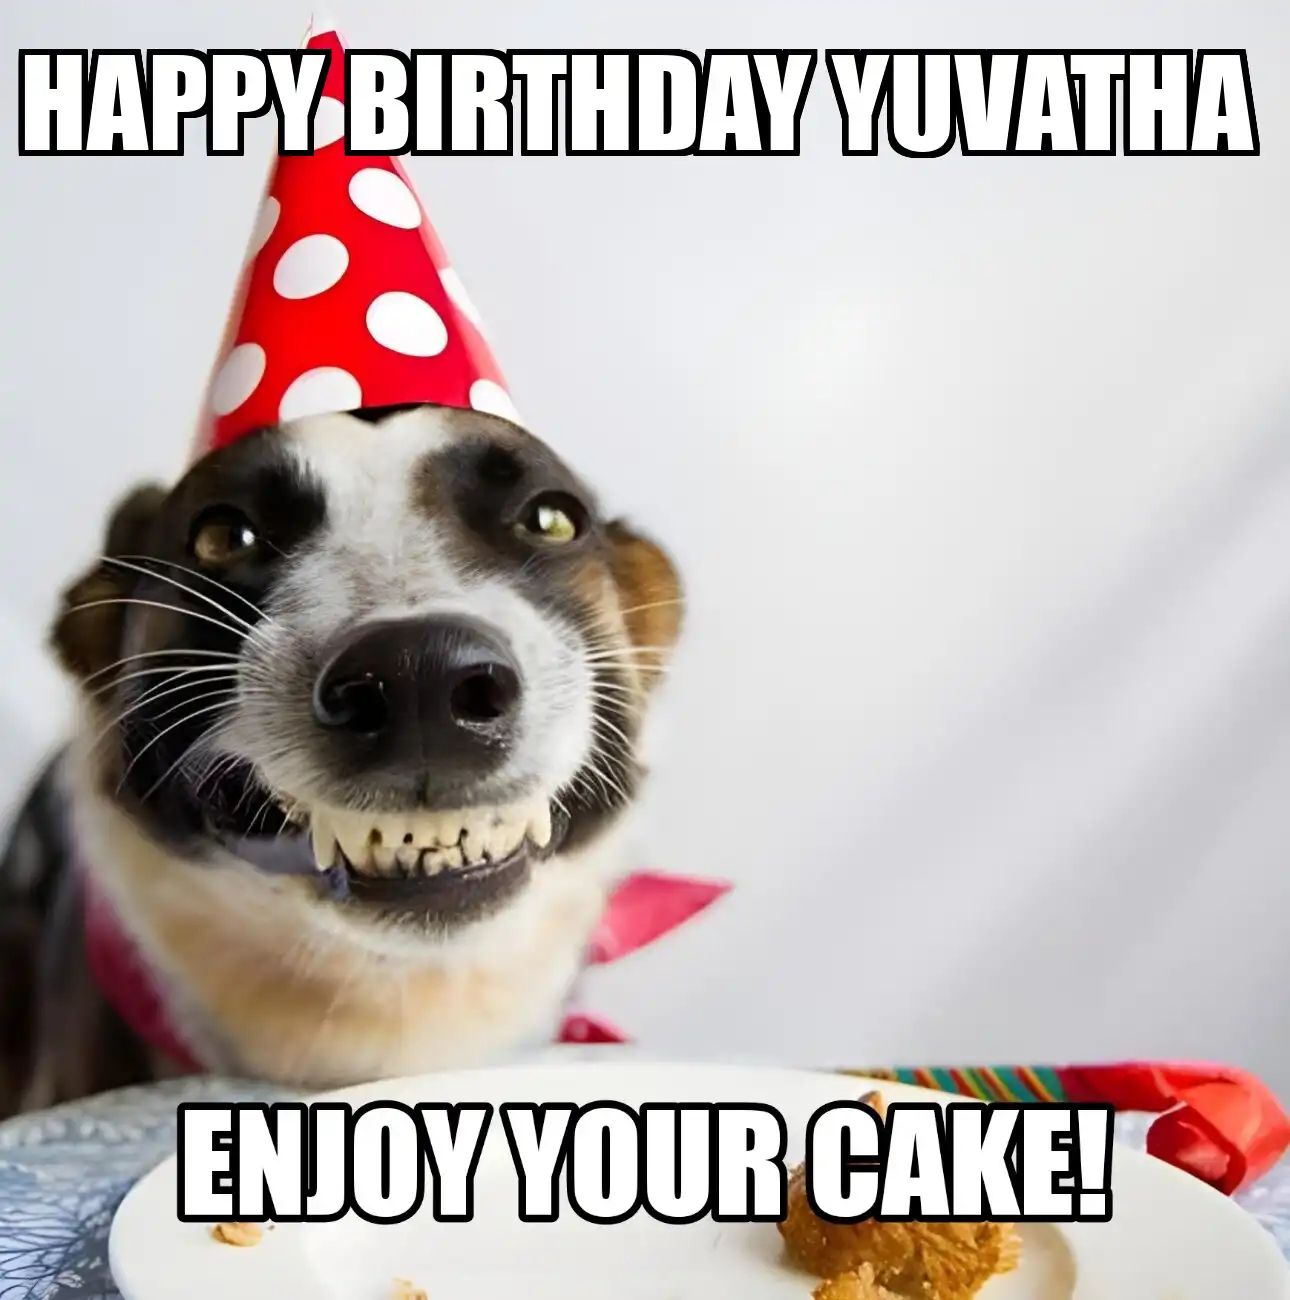 Happy Birthday Yuvatha Enjoy Your Cake Dog Meme